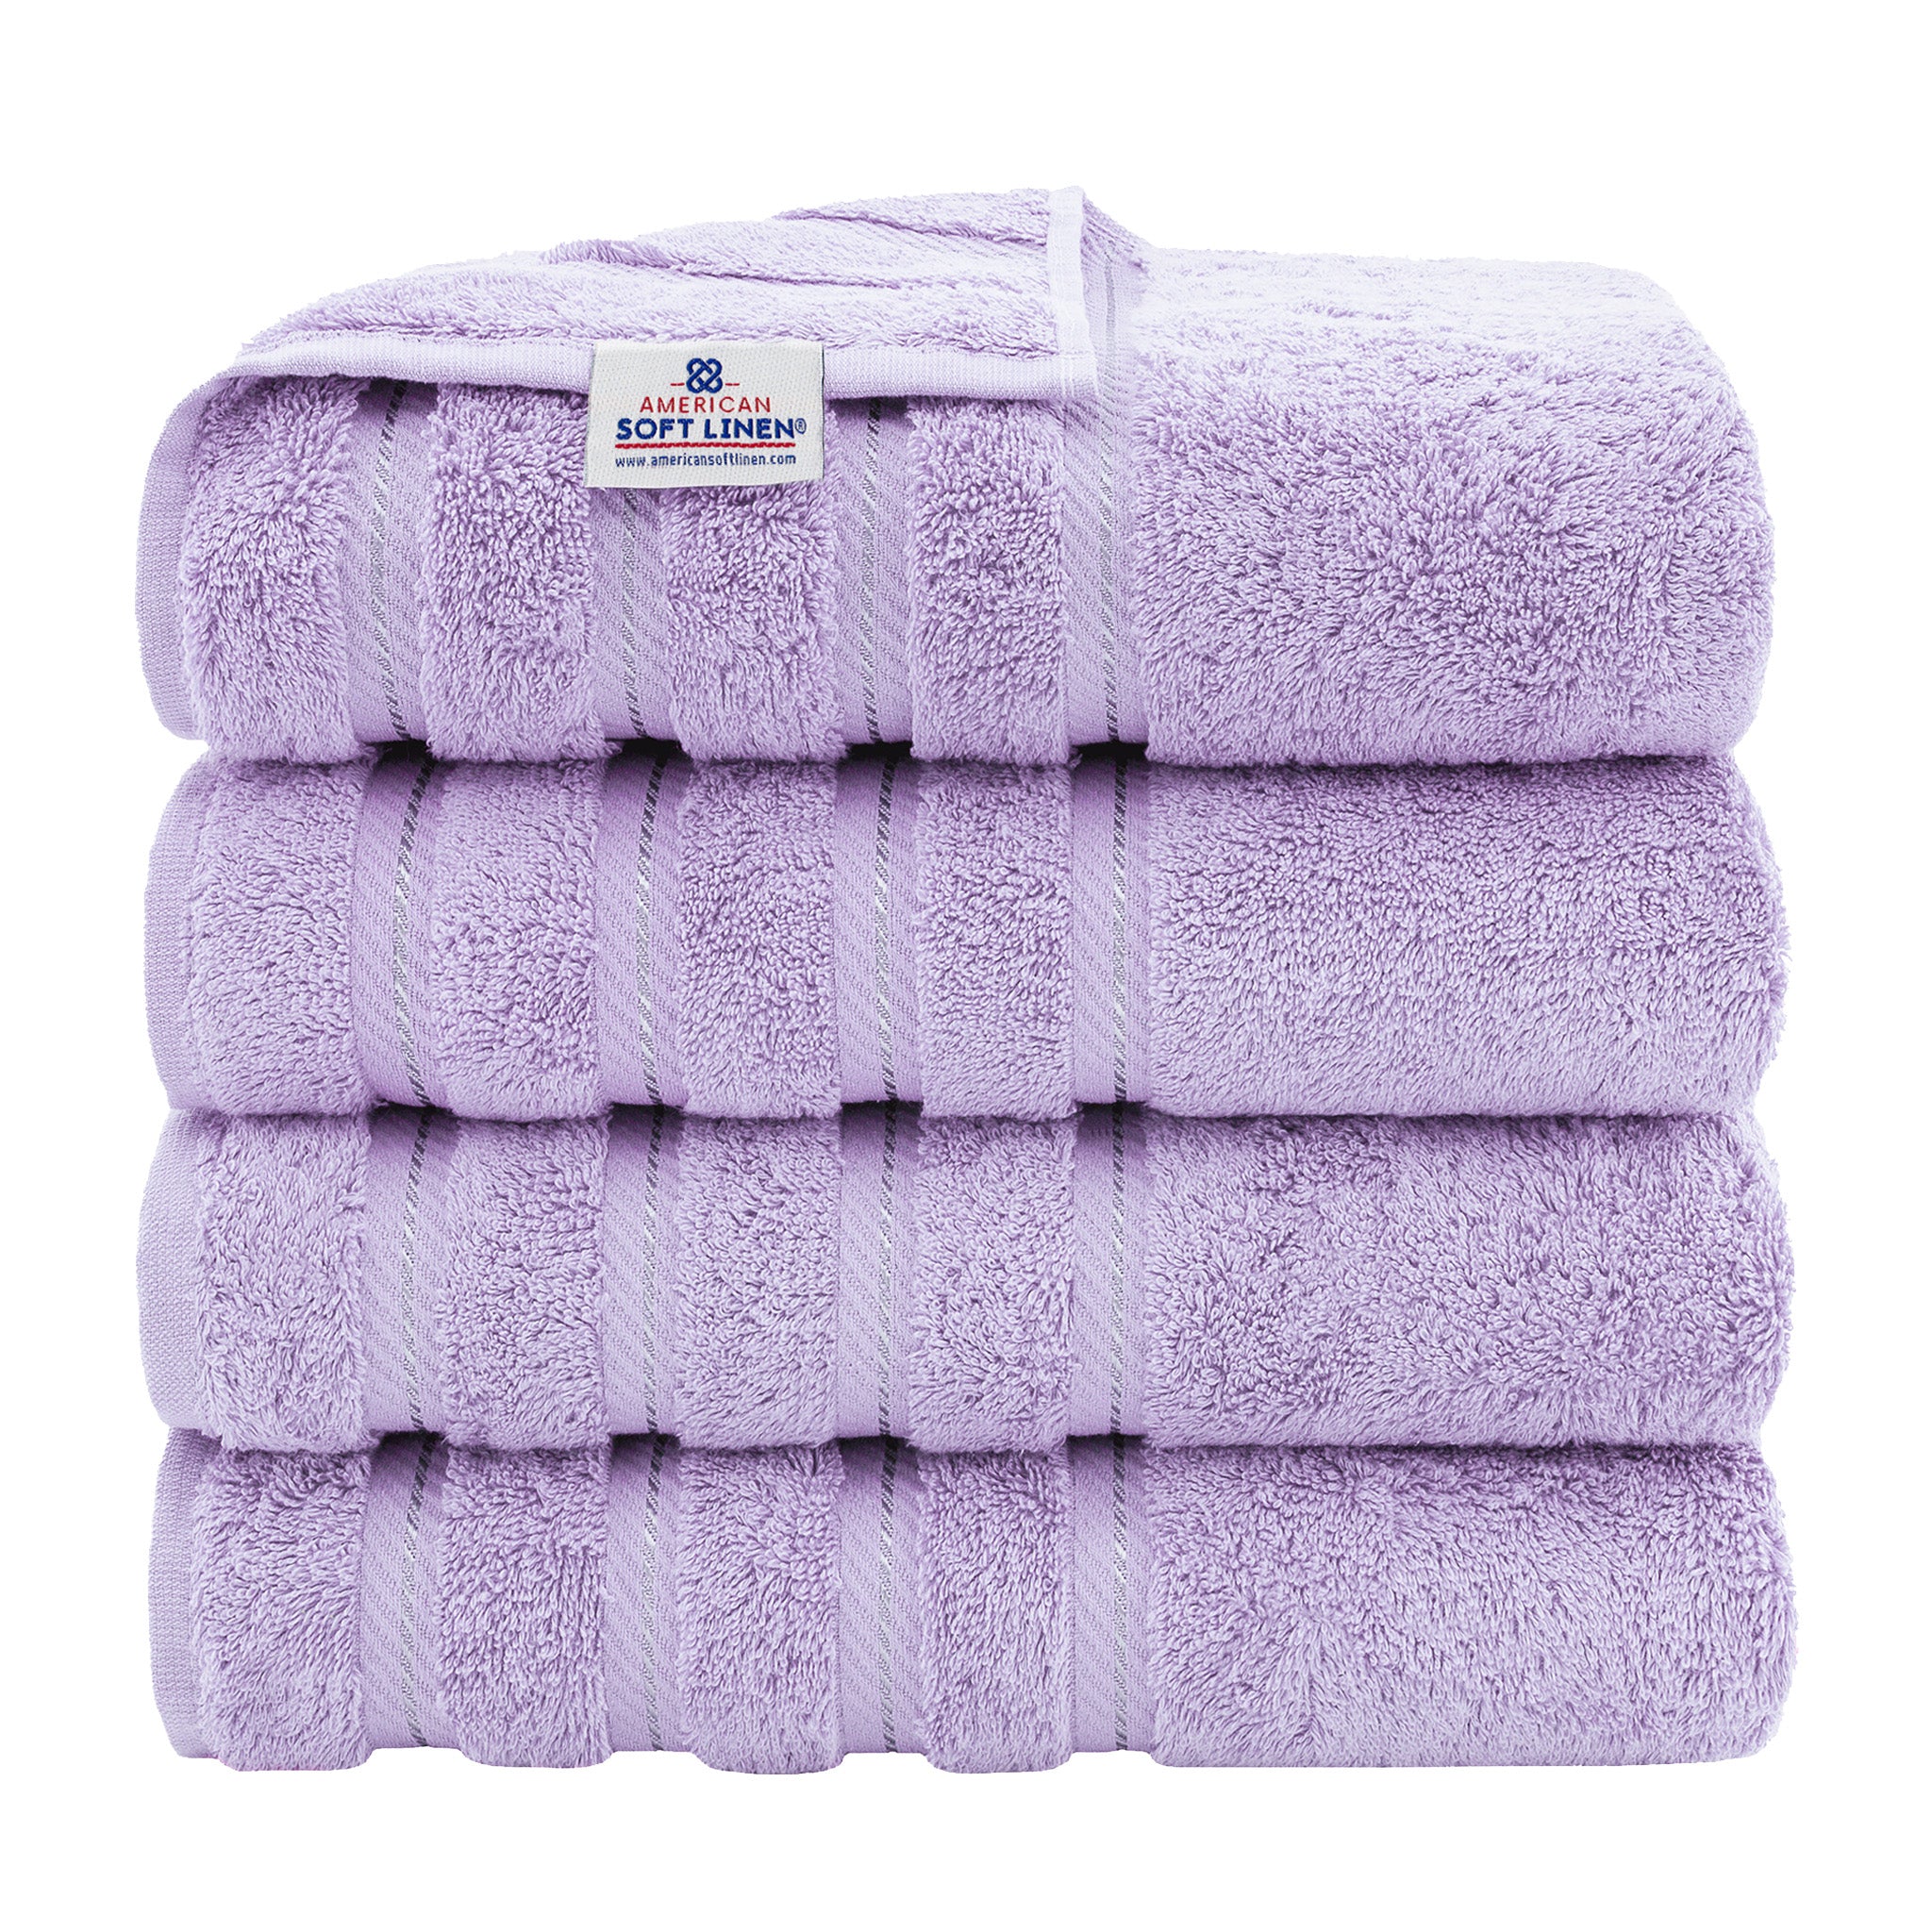 American Soft Linen 100% Turkish Cotton 4 Pack Bath Towel Set Wholesale lilac-1